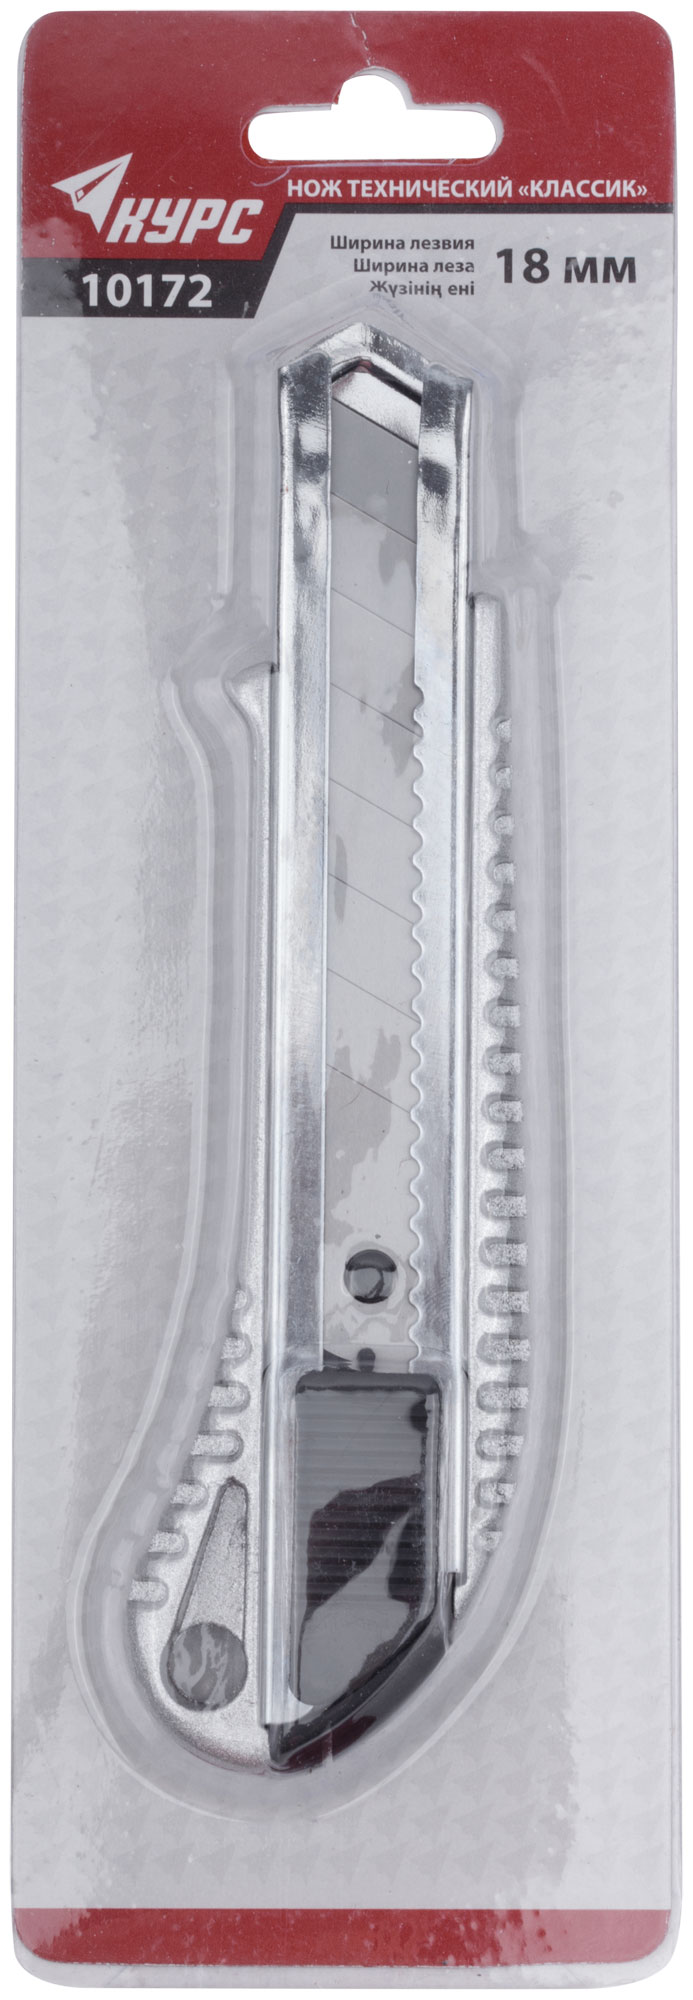 Нож технический "Классик" 18 мм, усиленнный, метал. корпус, резиновая вставка